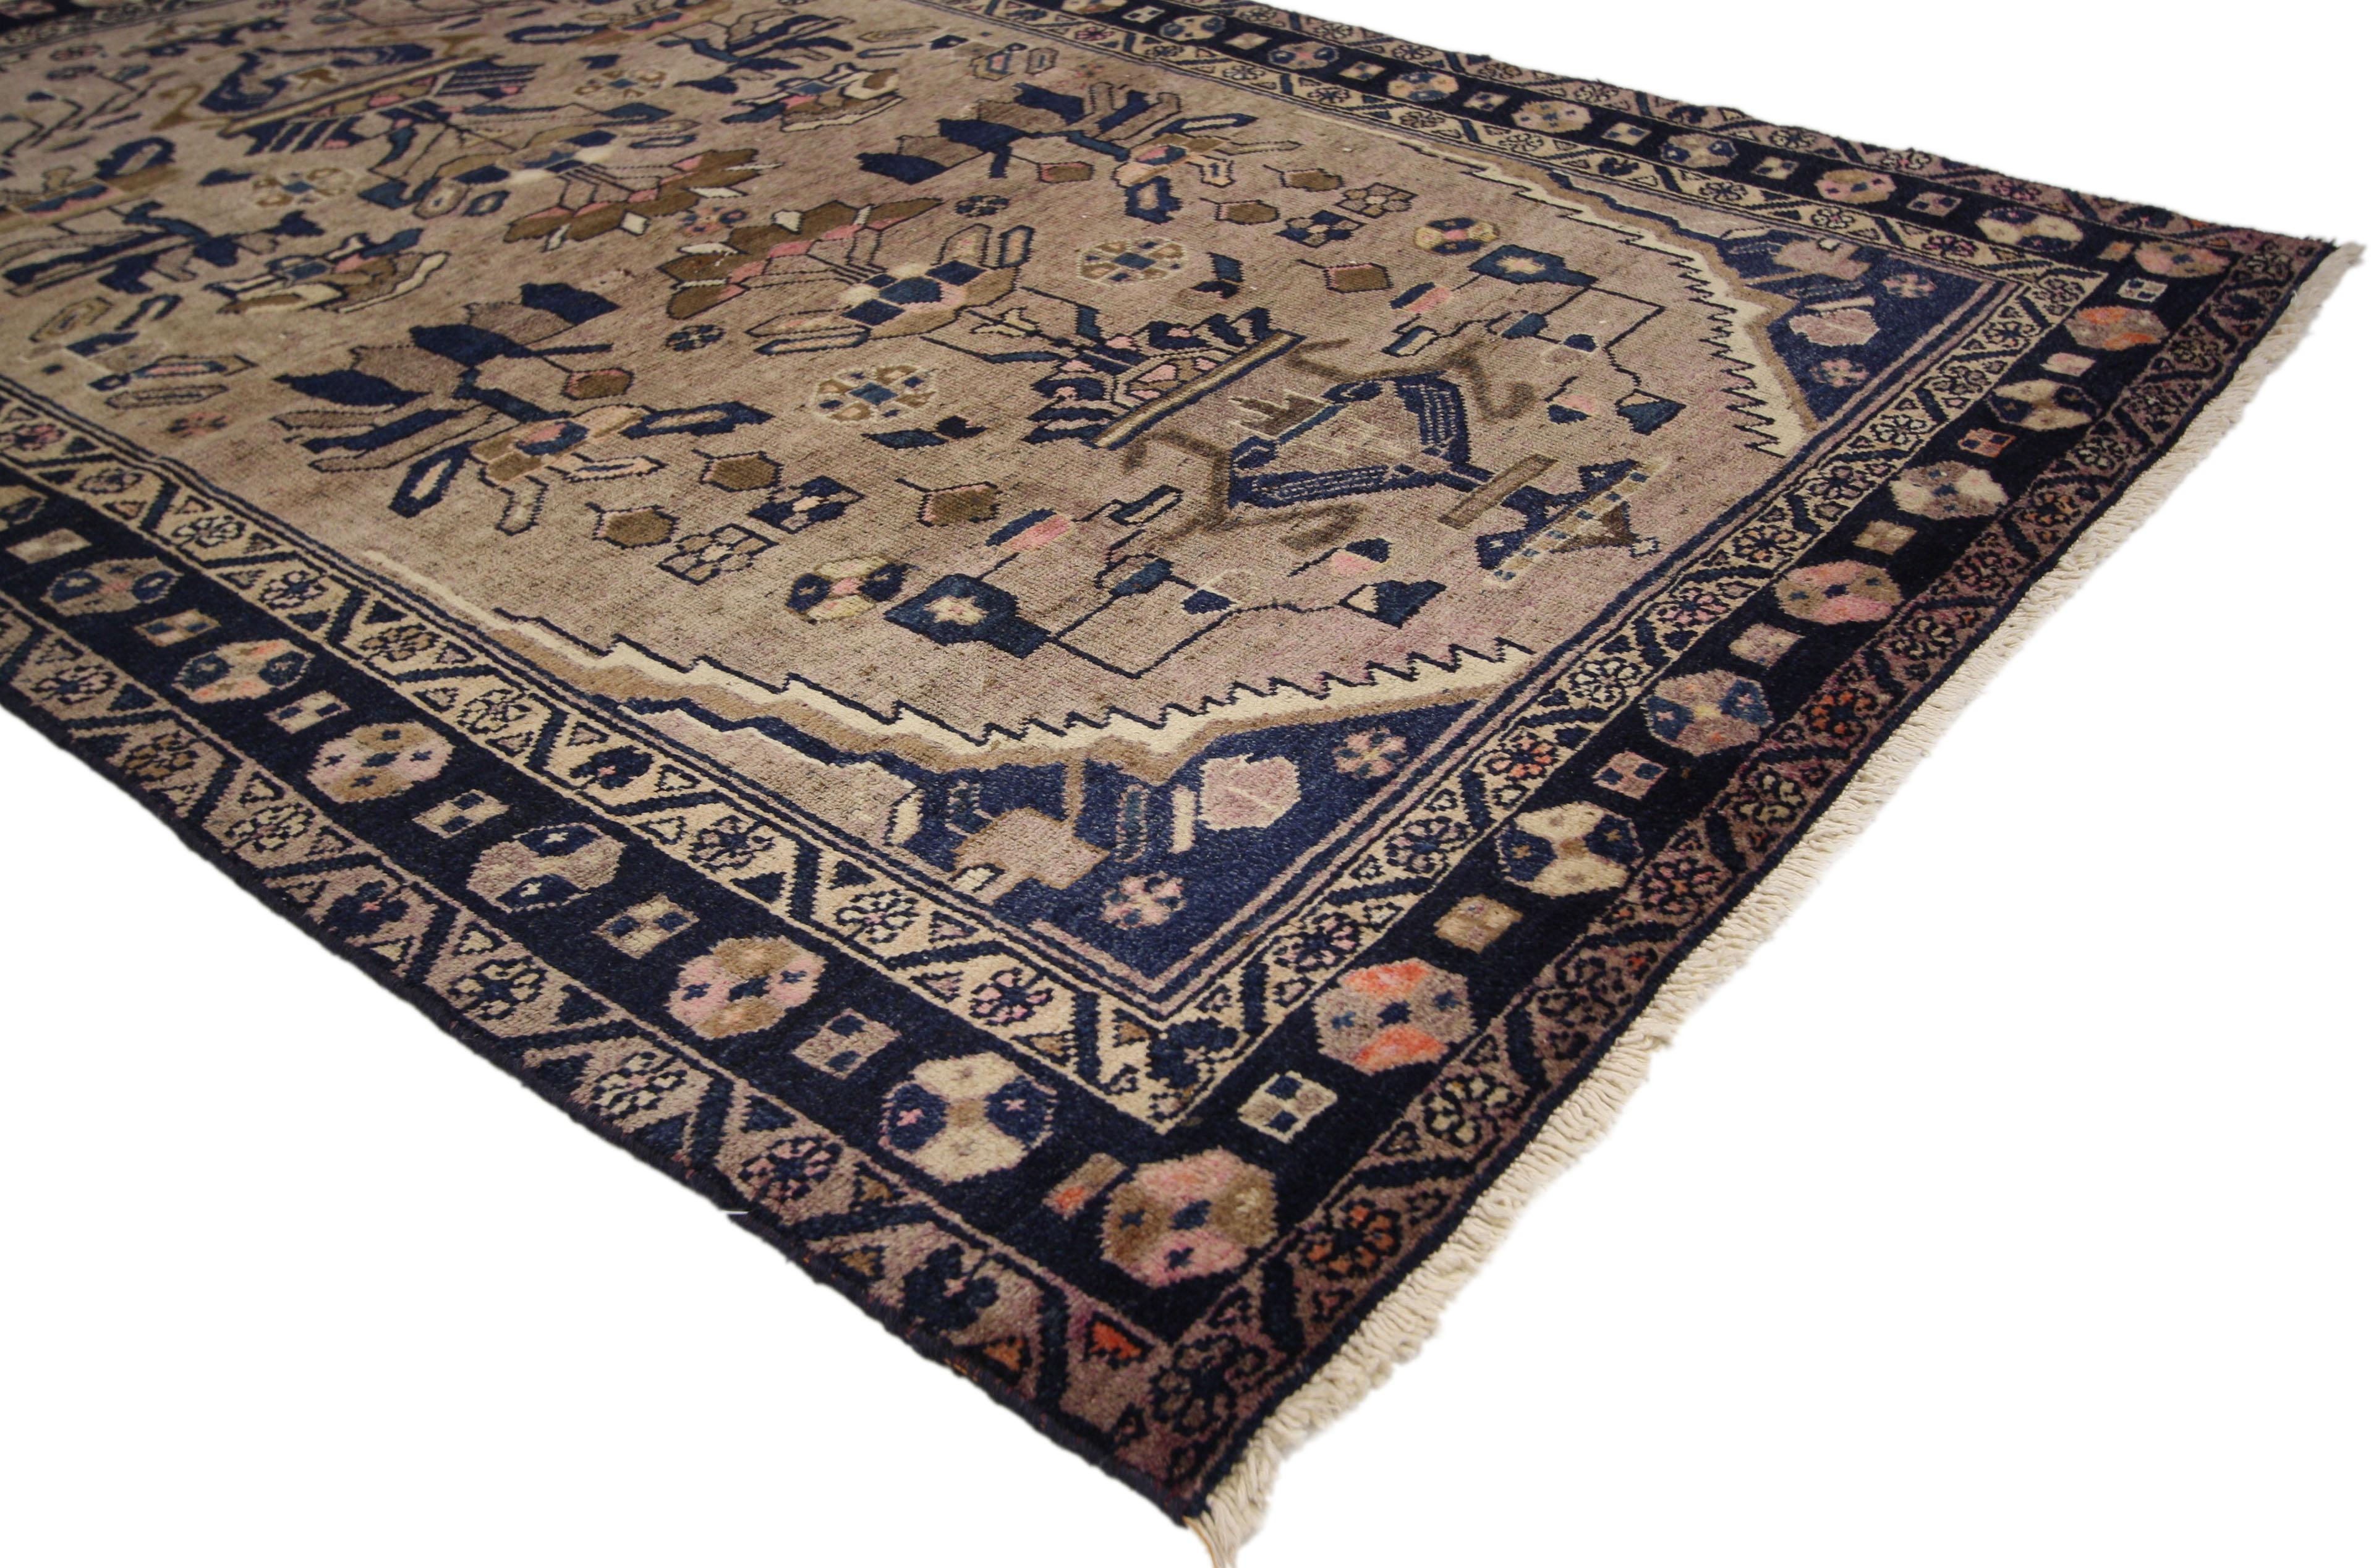 75332, tapis persan vintage Hamadan, tapis d'entrée ou de foyer. Cet élégant tapis persan vintage Hamadan en laine nouée à la main présente un champ ovale dans de superbes nuances variées de bleu encre, bleu marine, violet bruyère, aubergine pâle,